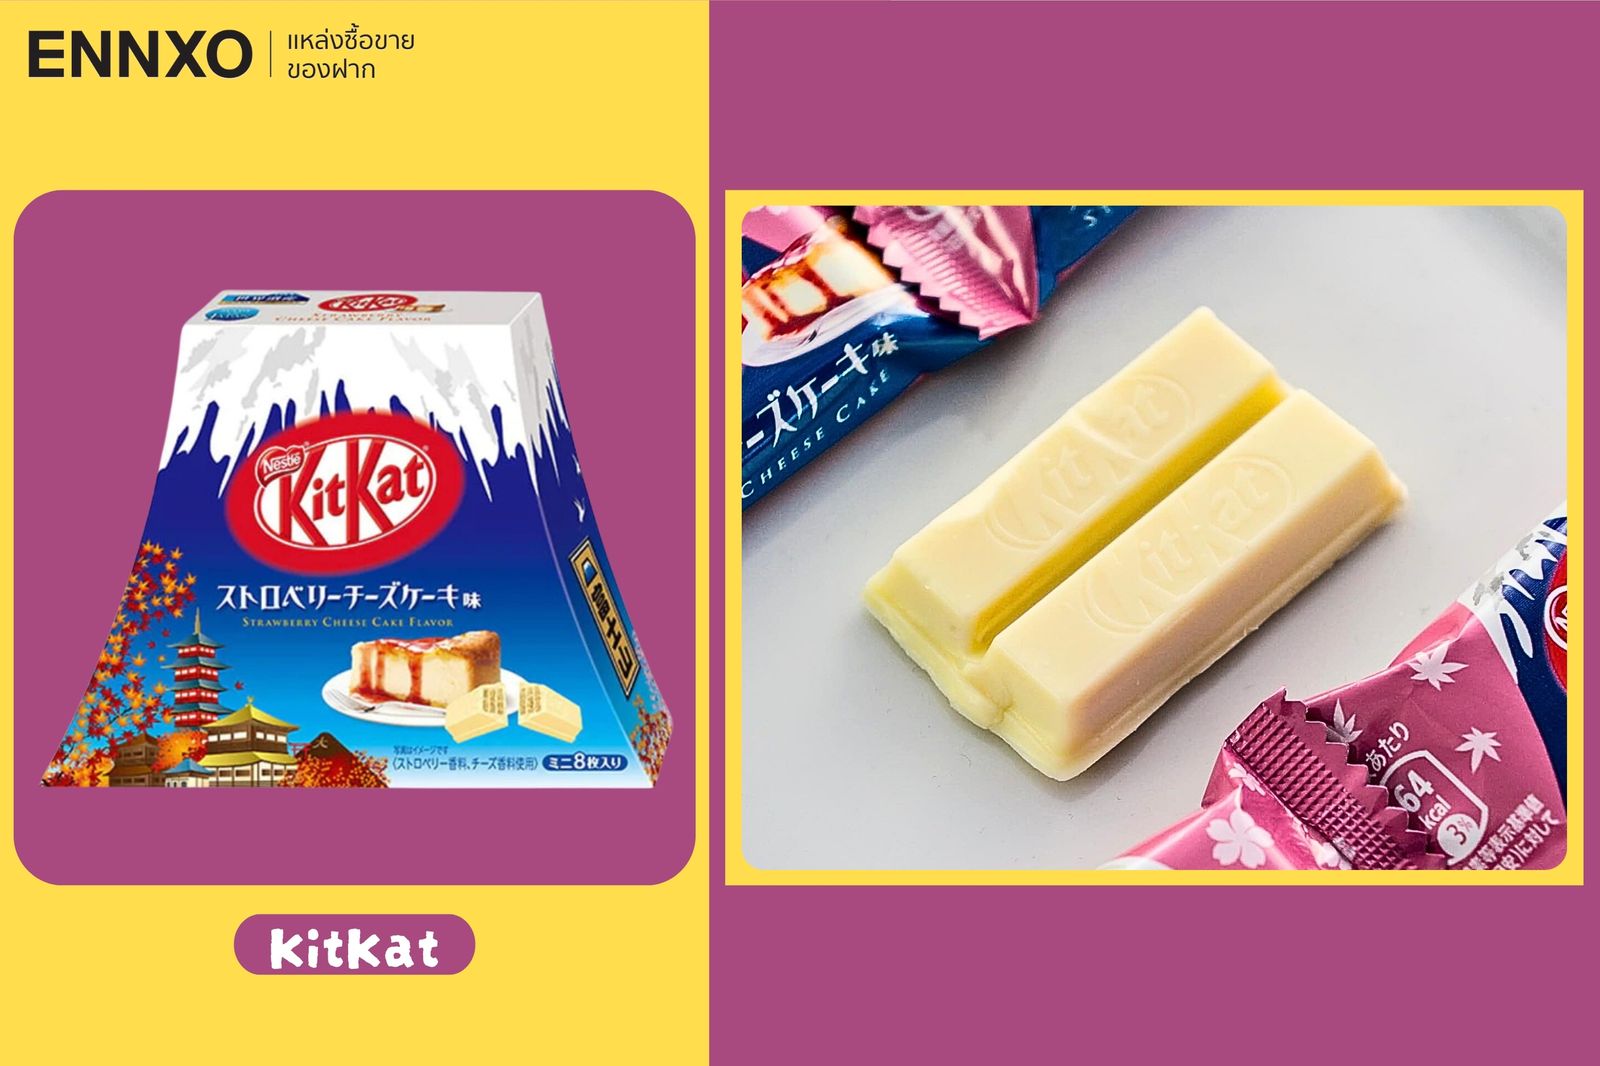 KitKat อีกหนึ่งของฝากยอดฮิตของญี่ปุ่นที่มีหลายรสชาติและแพ็กเกจสวย